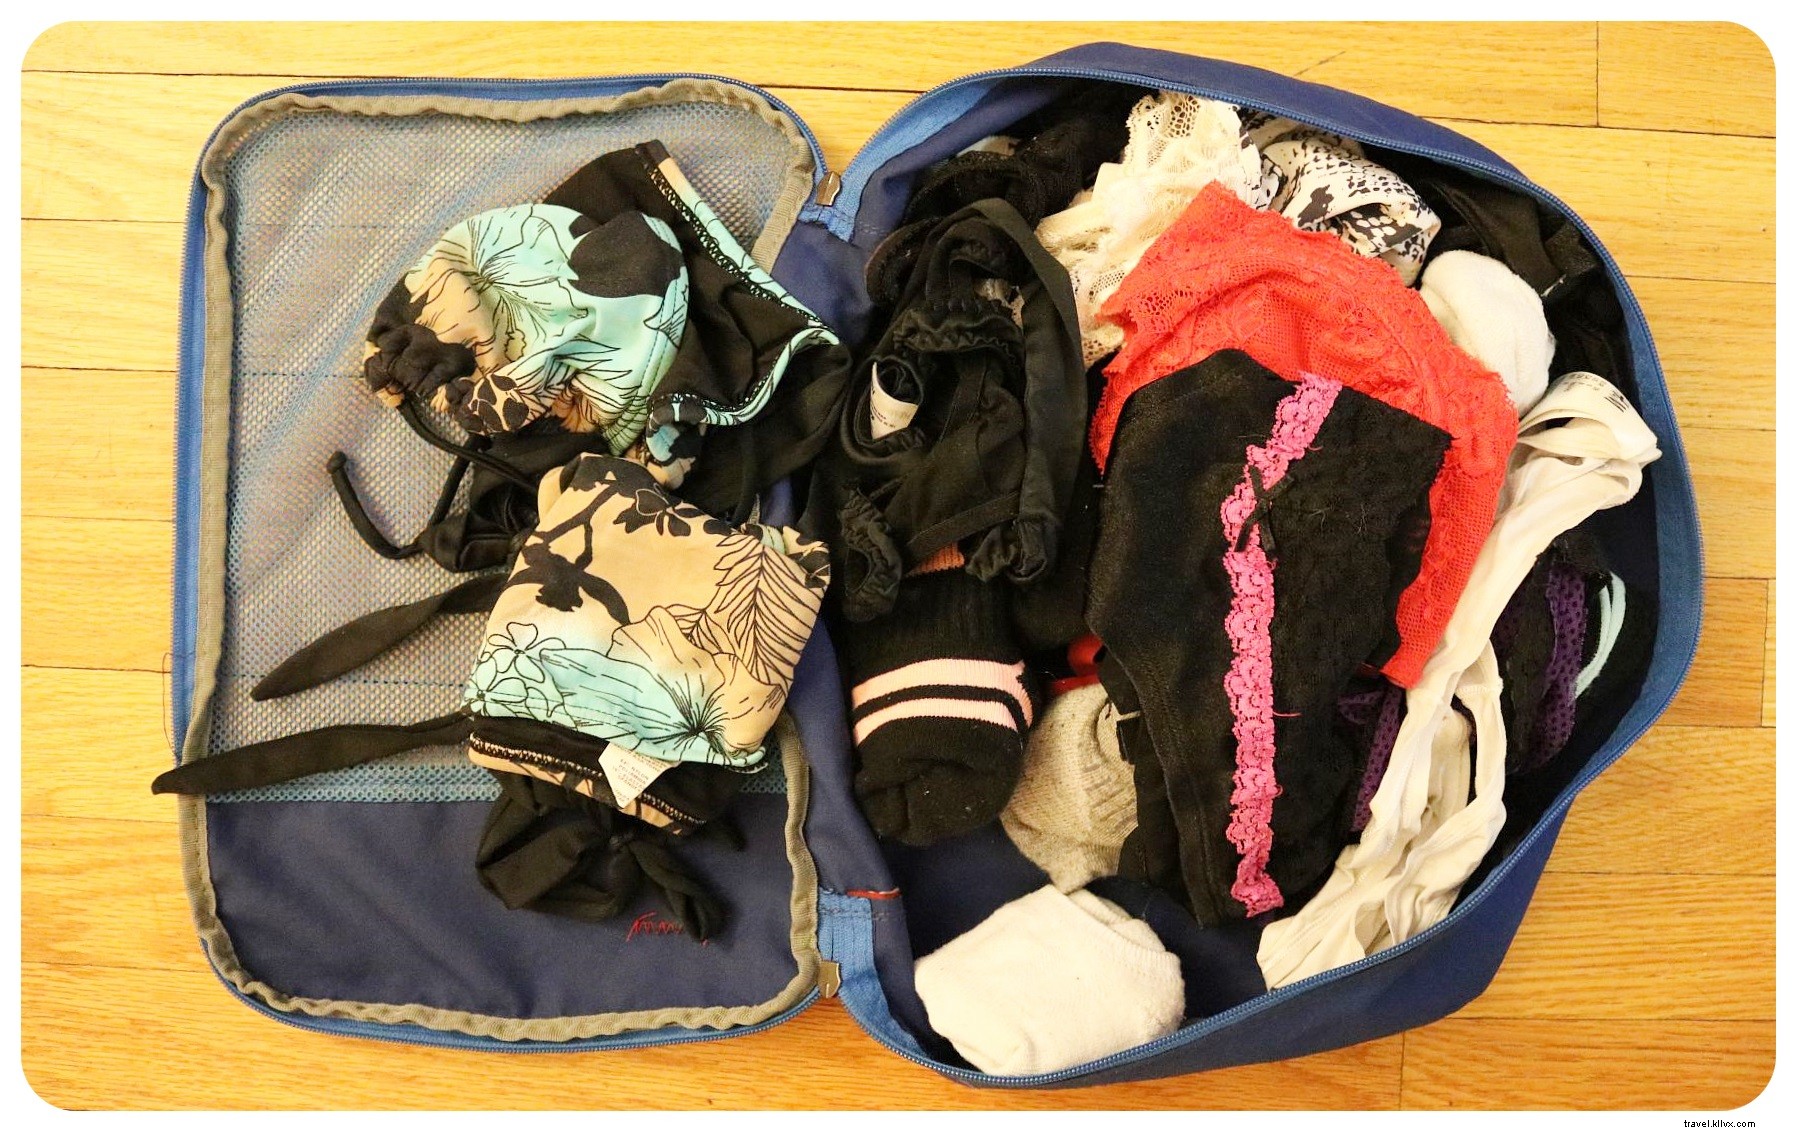 Embalagem facilitada com o TUO, o organizador de roupas íntimas de viagem definitivo